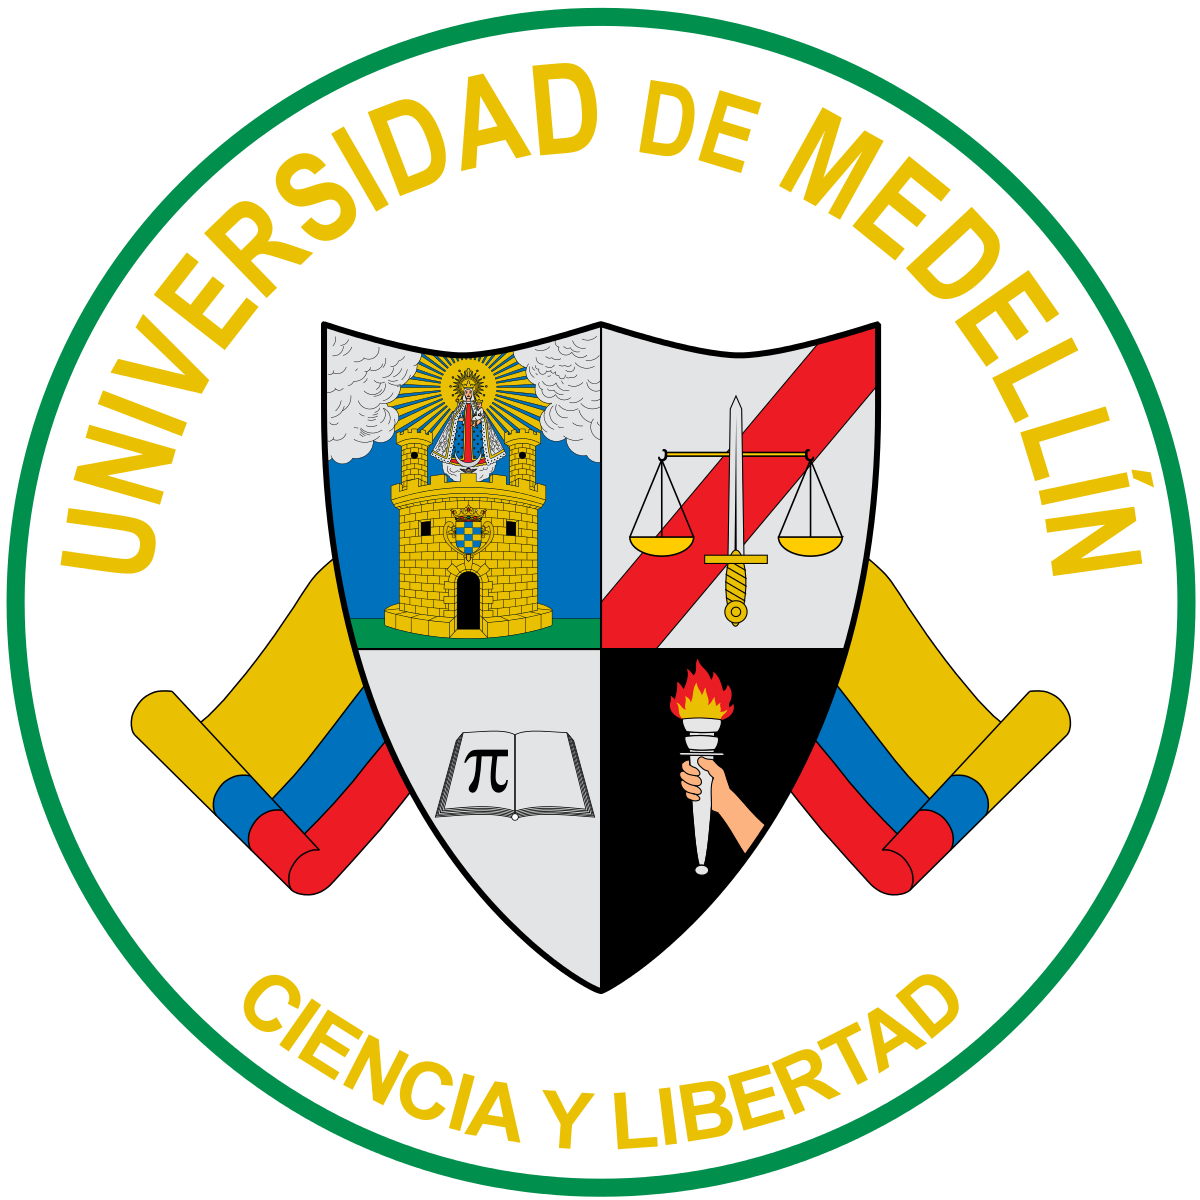 Universidad de Medellin(w)